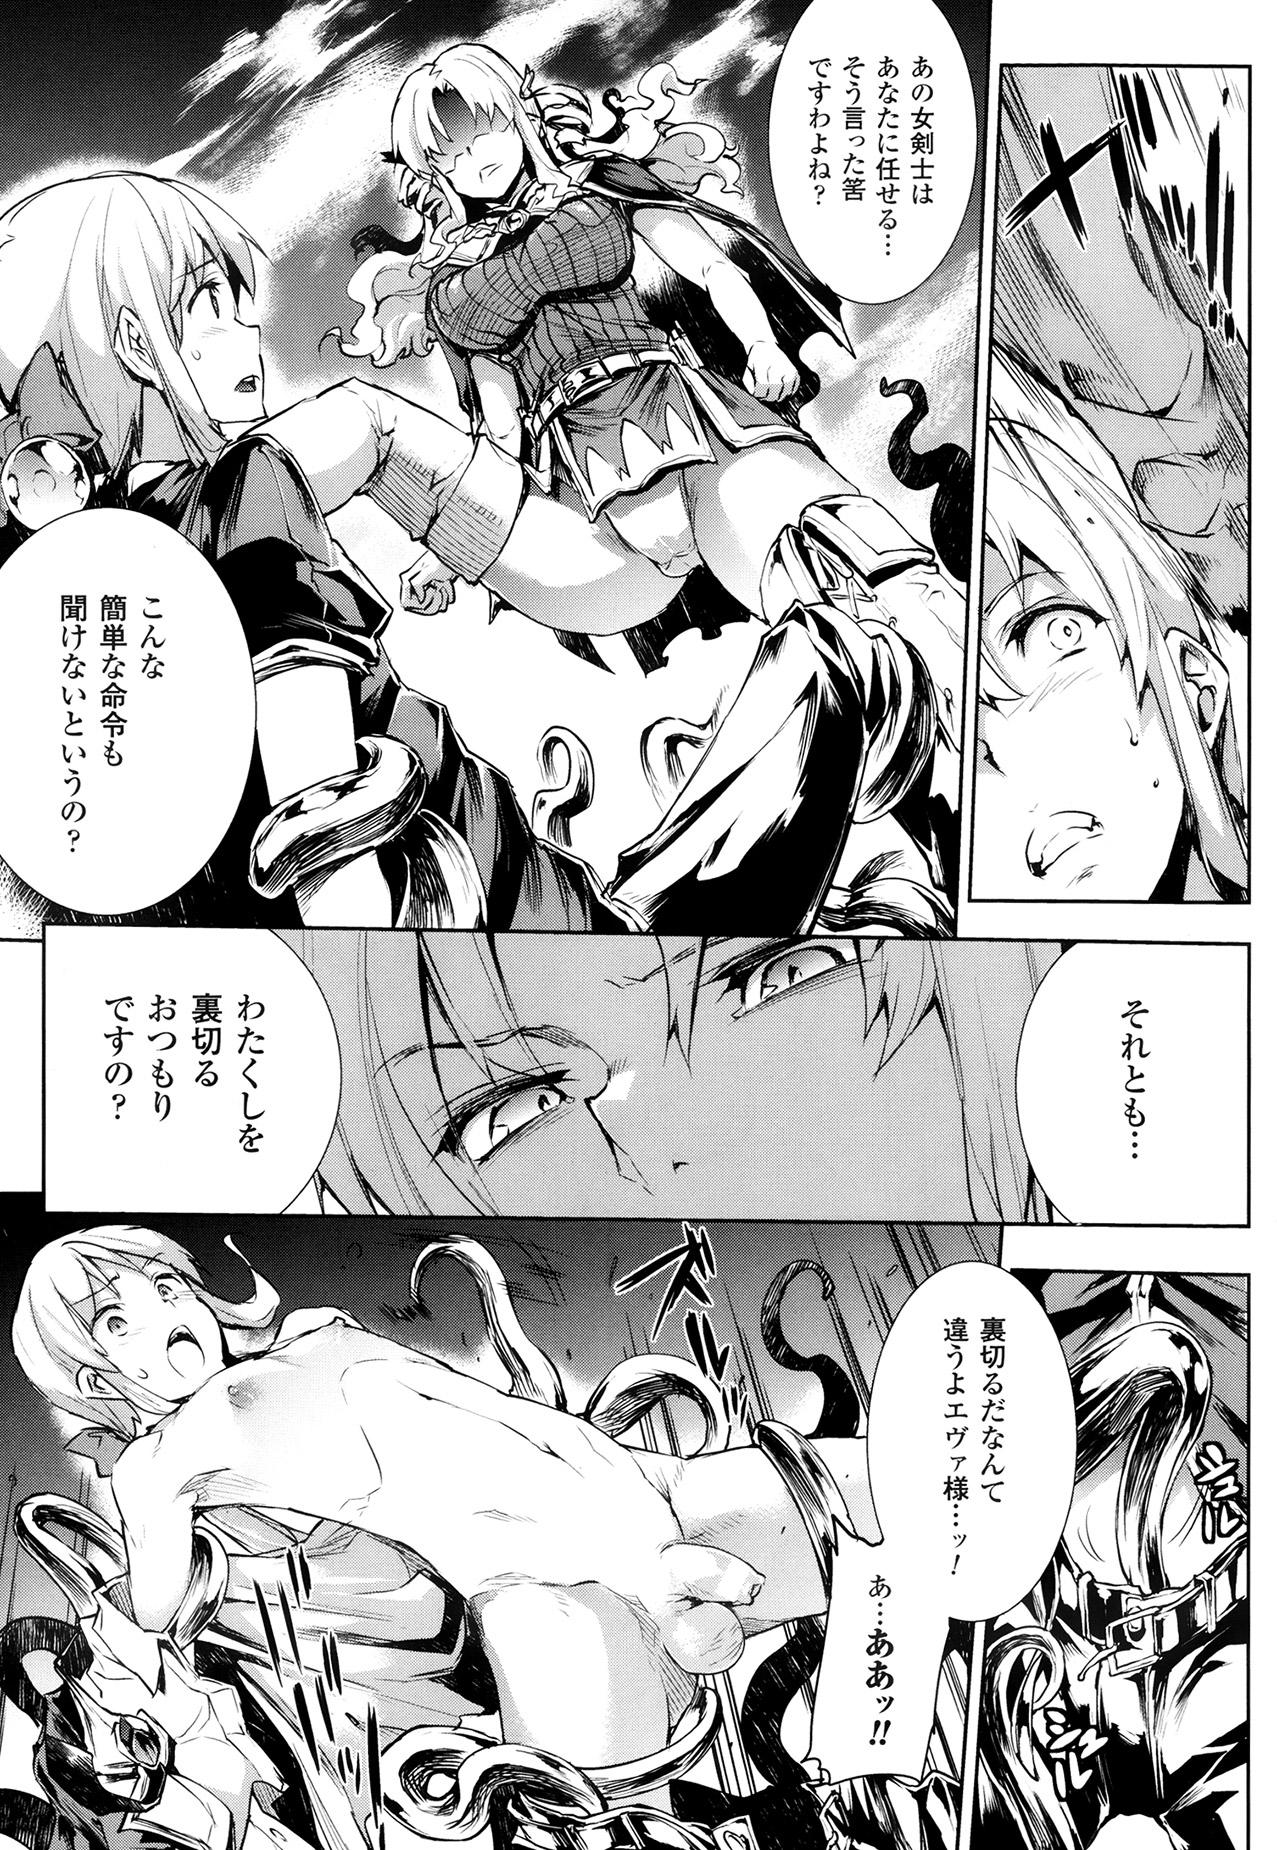 [Erect Sawaru] Shinkyoku no Grimoire -PANDRA saga 2nd story- Ch. 7-12 36